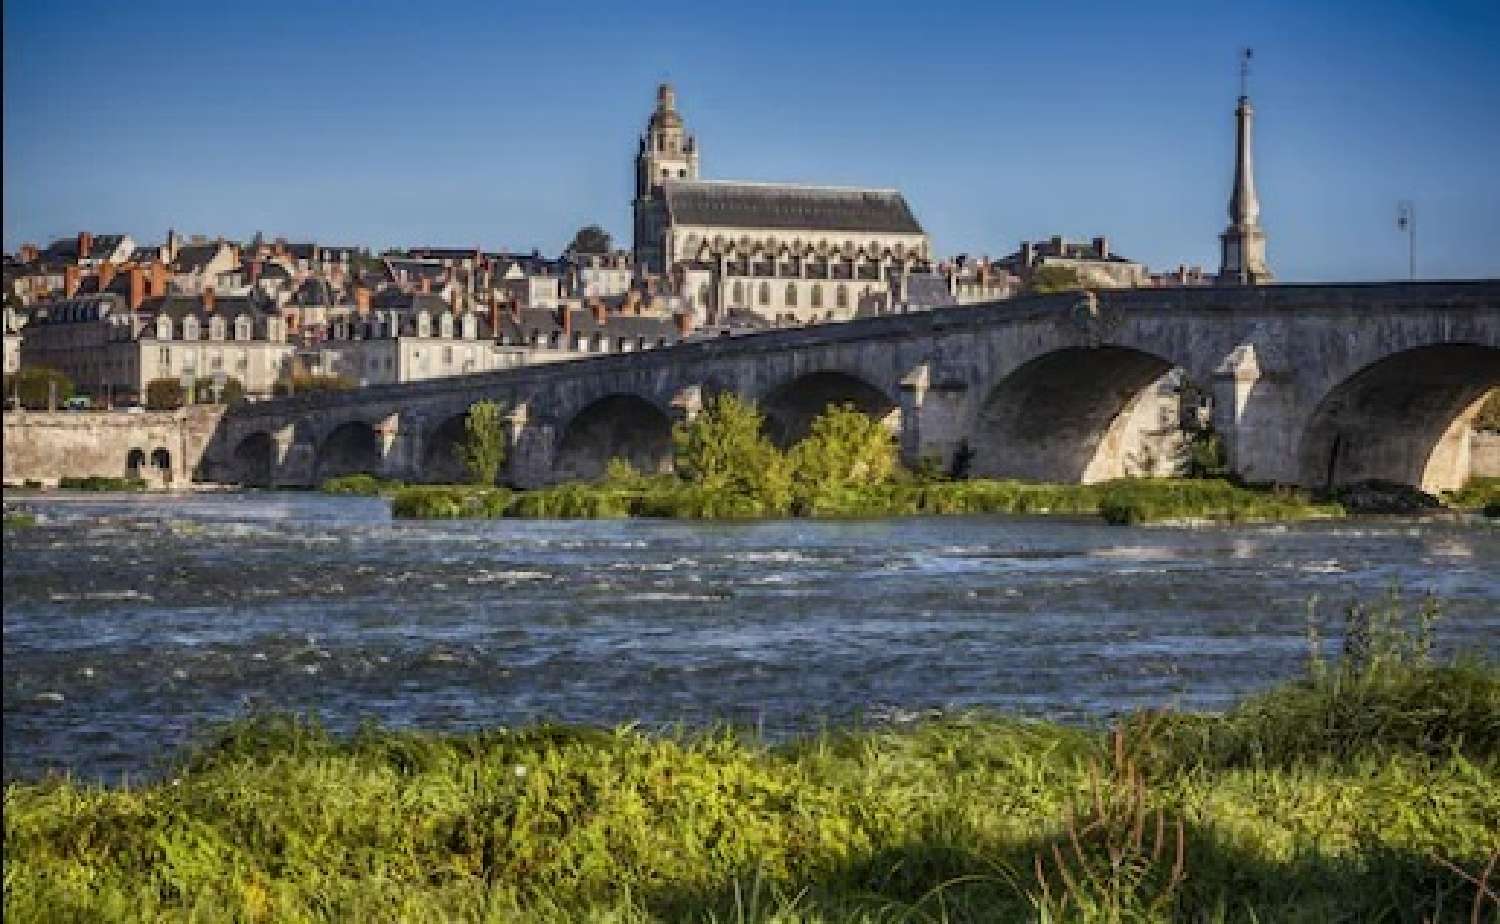  à vendre château Blois Loir-et-Cher 6